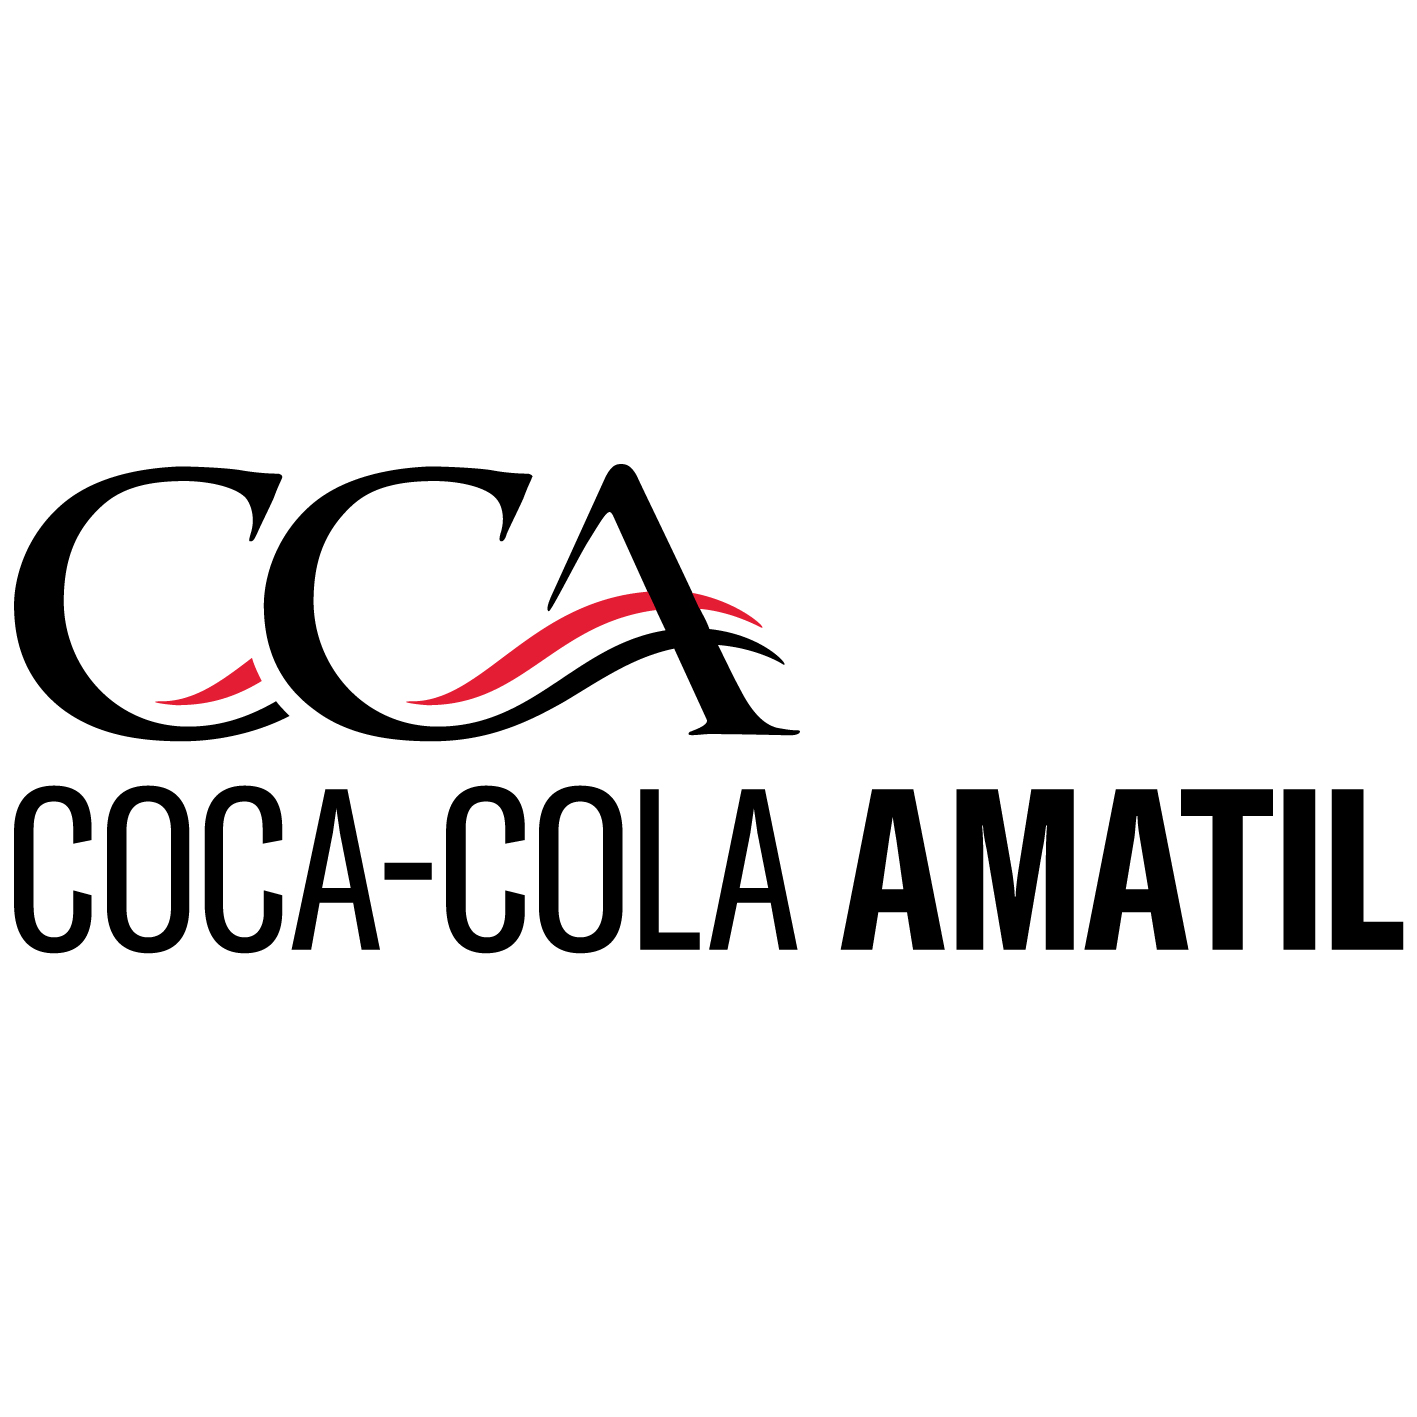 Die Sydney, New South Wales, Australia Agentur Red Search half Coca Cola Amatil dabei, sein Geschäft mit SEO und digitalem Marketing zu vergrößern